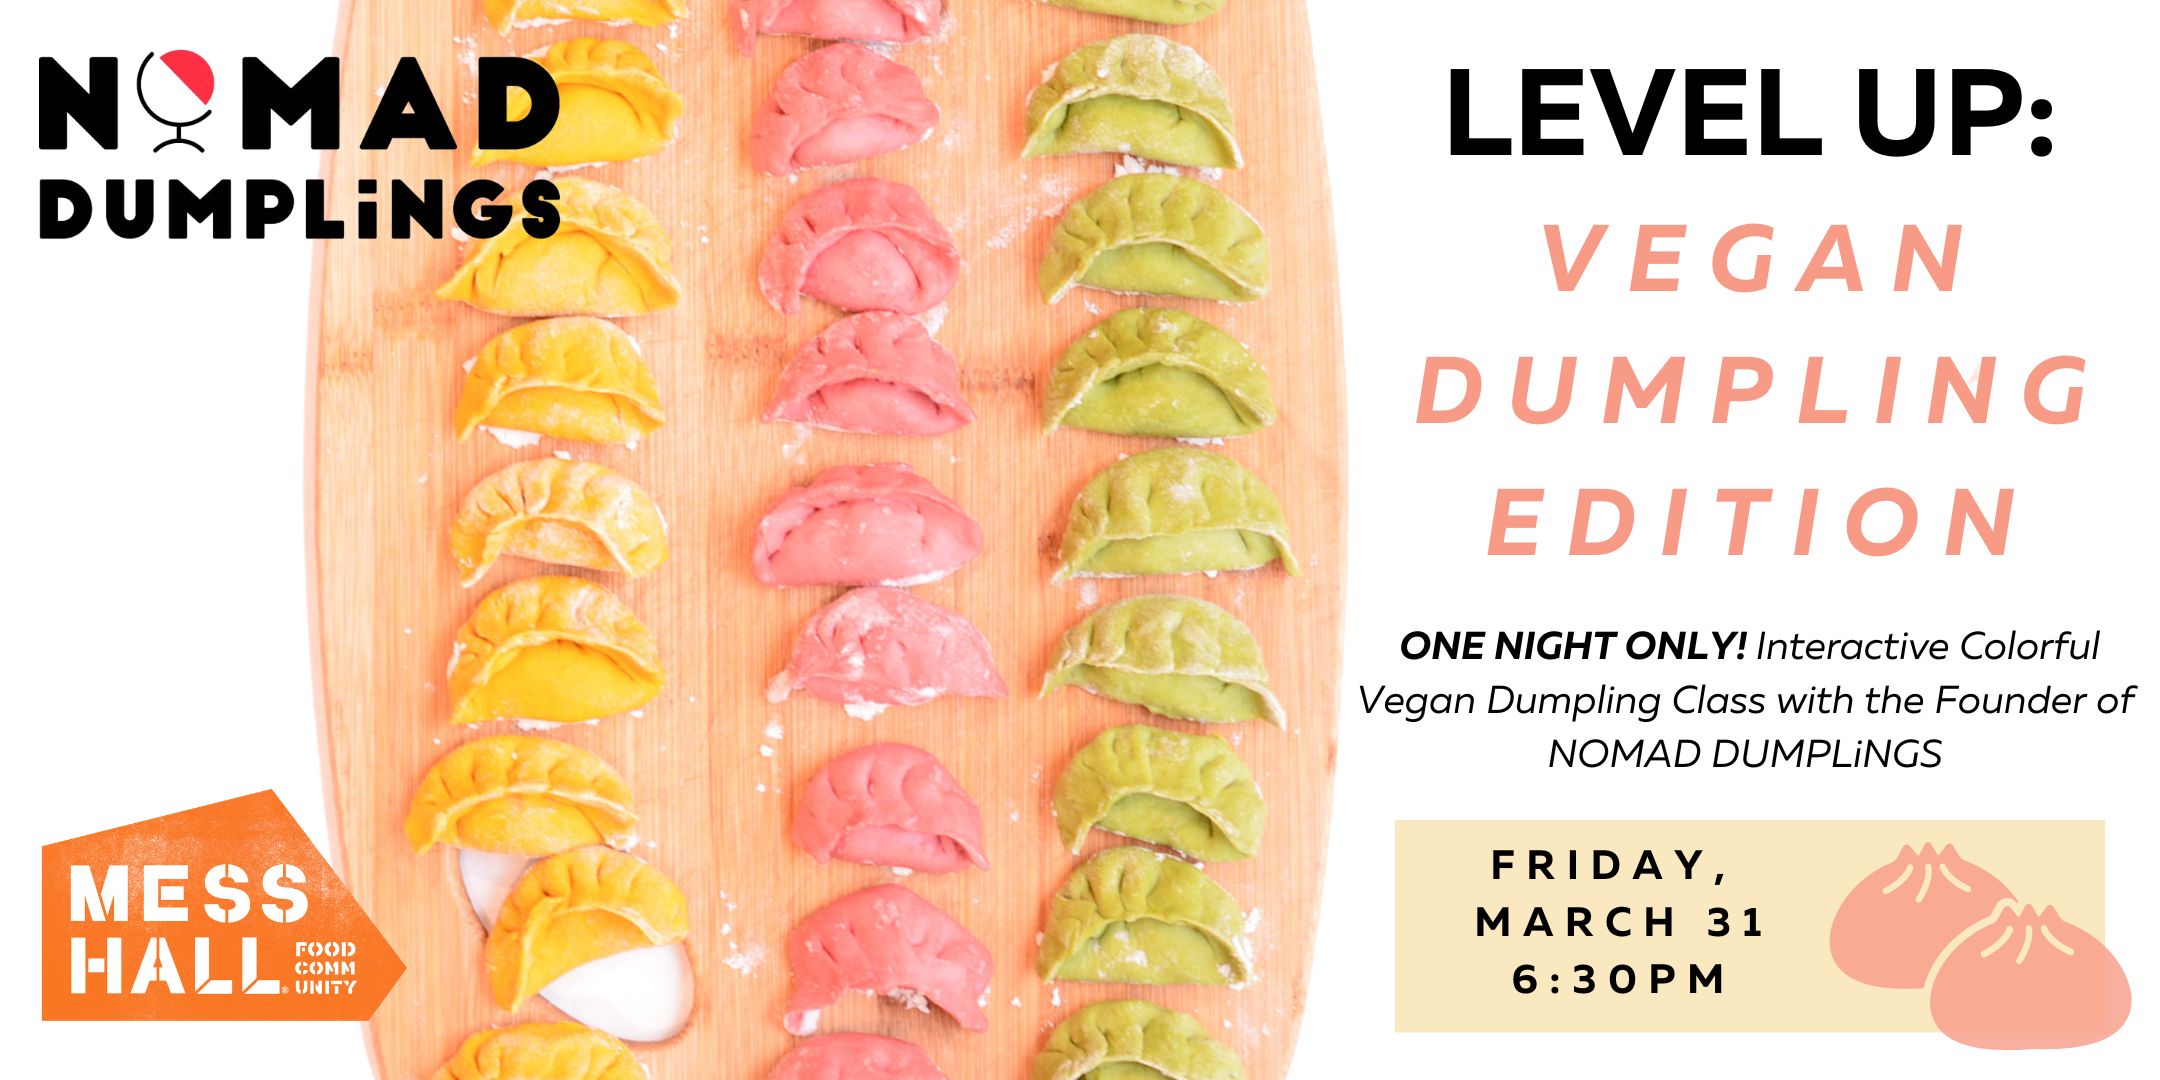 LEVEL UP! Vegan Dumpling Edition